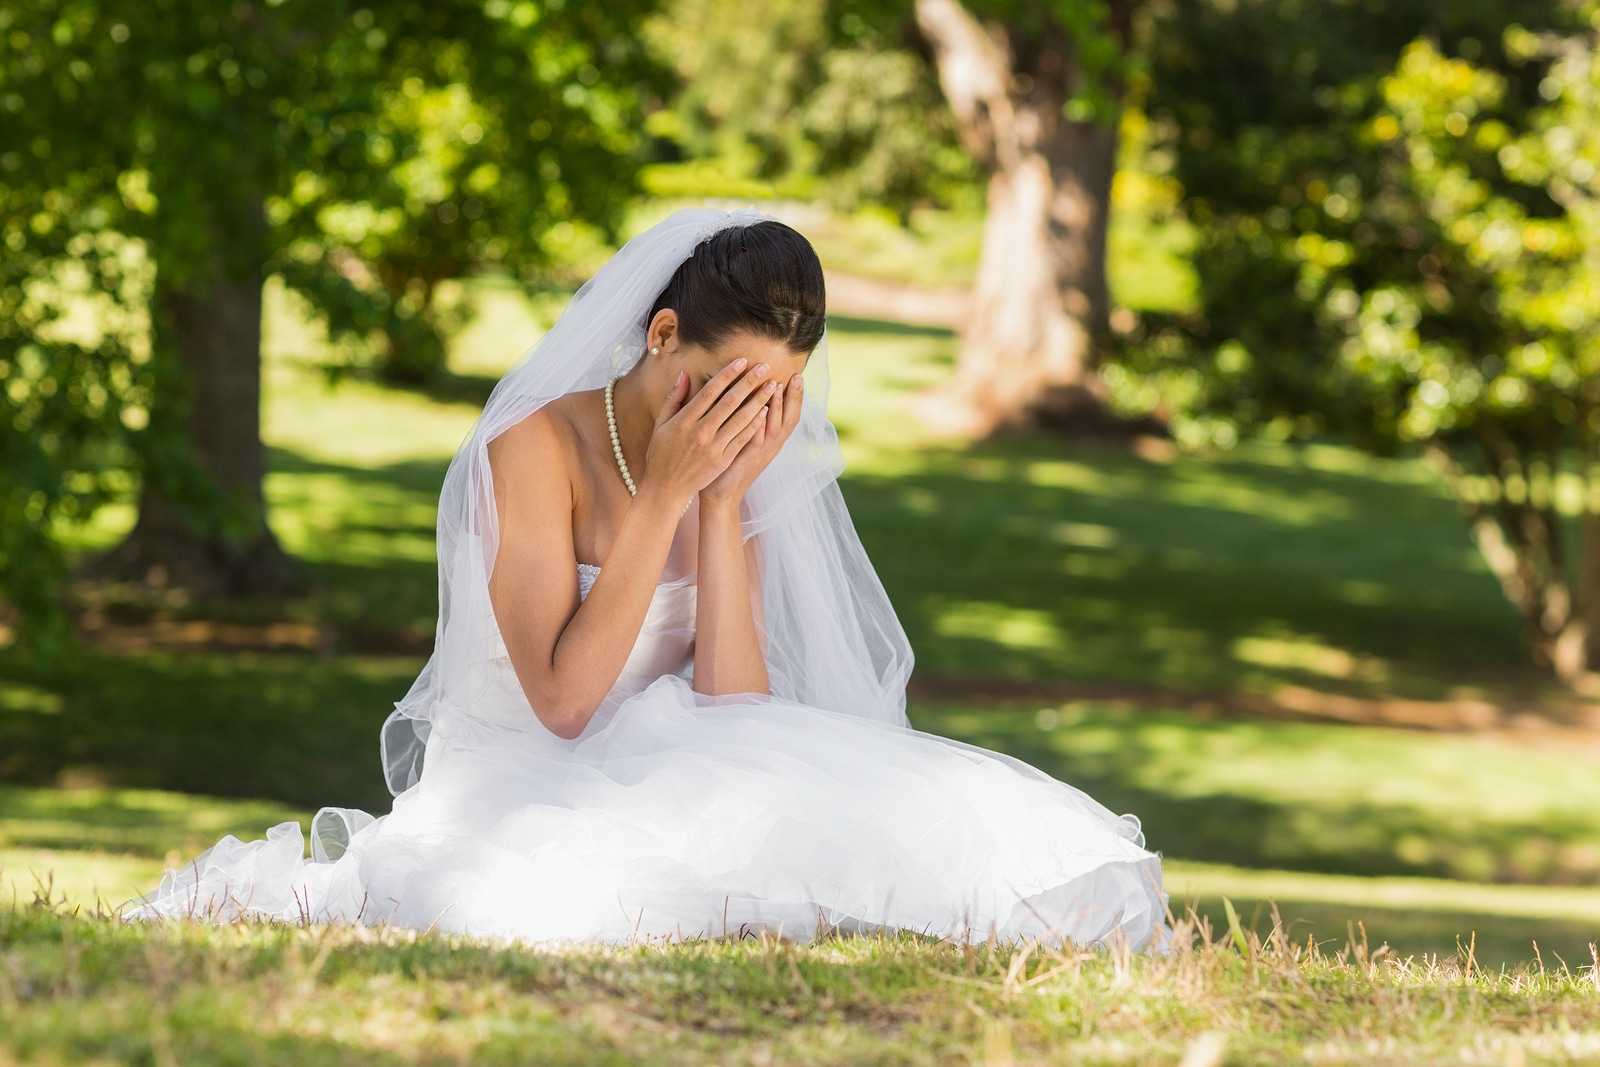 К чему видеть себя в свадебном платье замужней женщине, толкование сновидения по различным сонникам